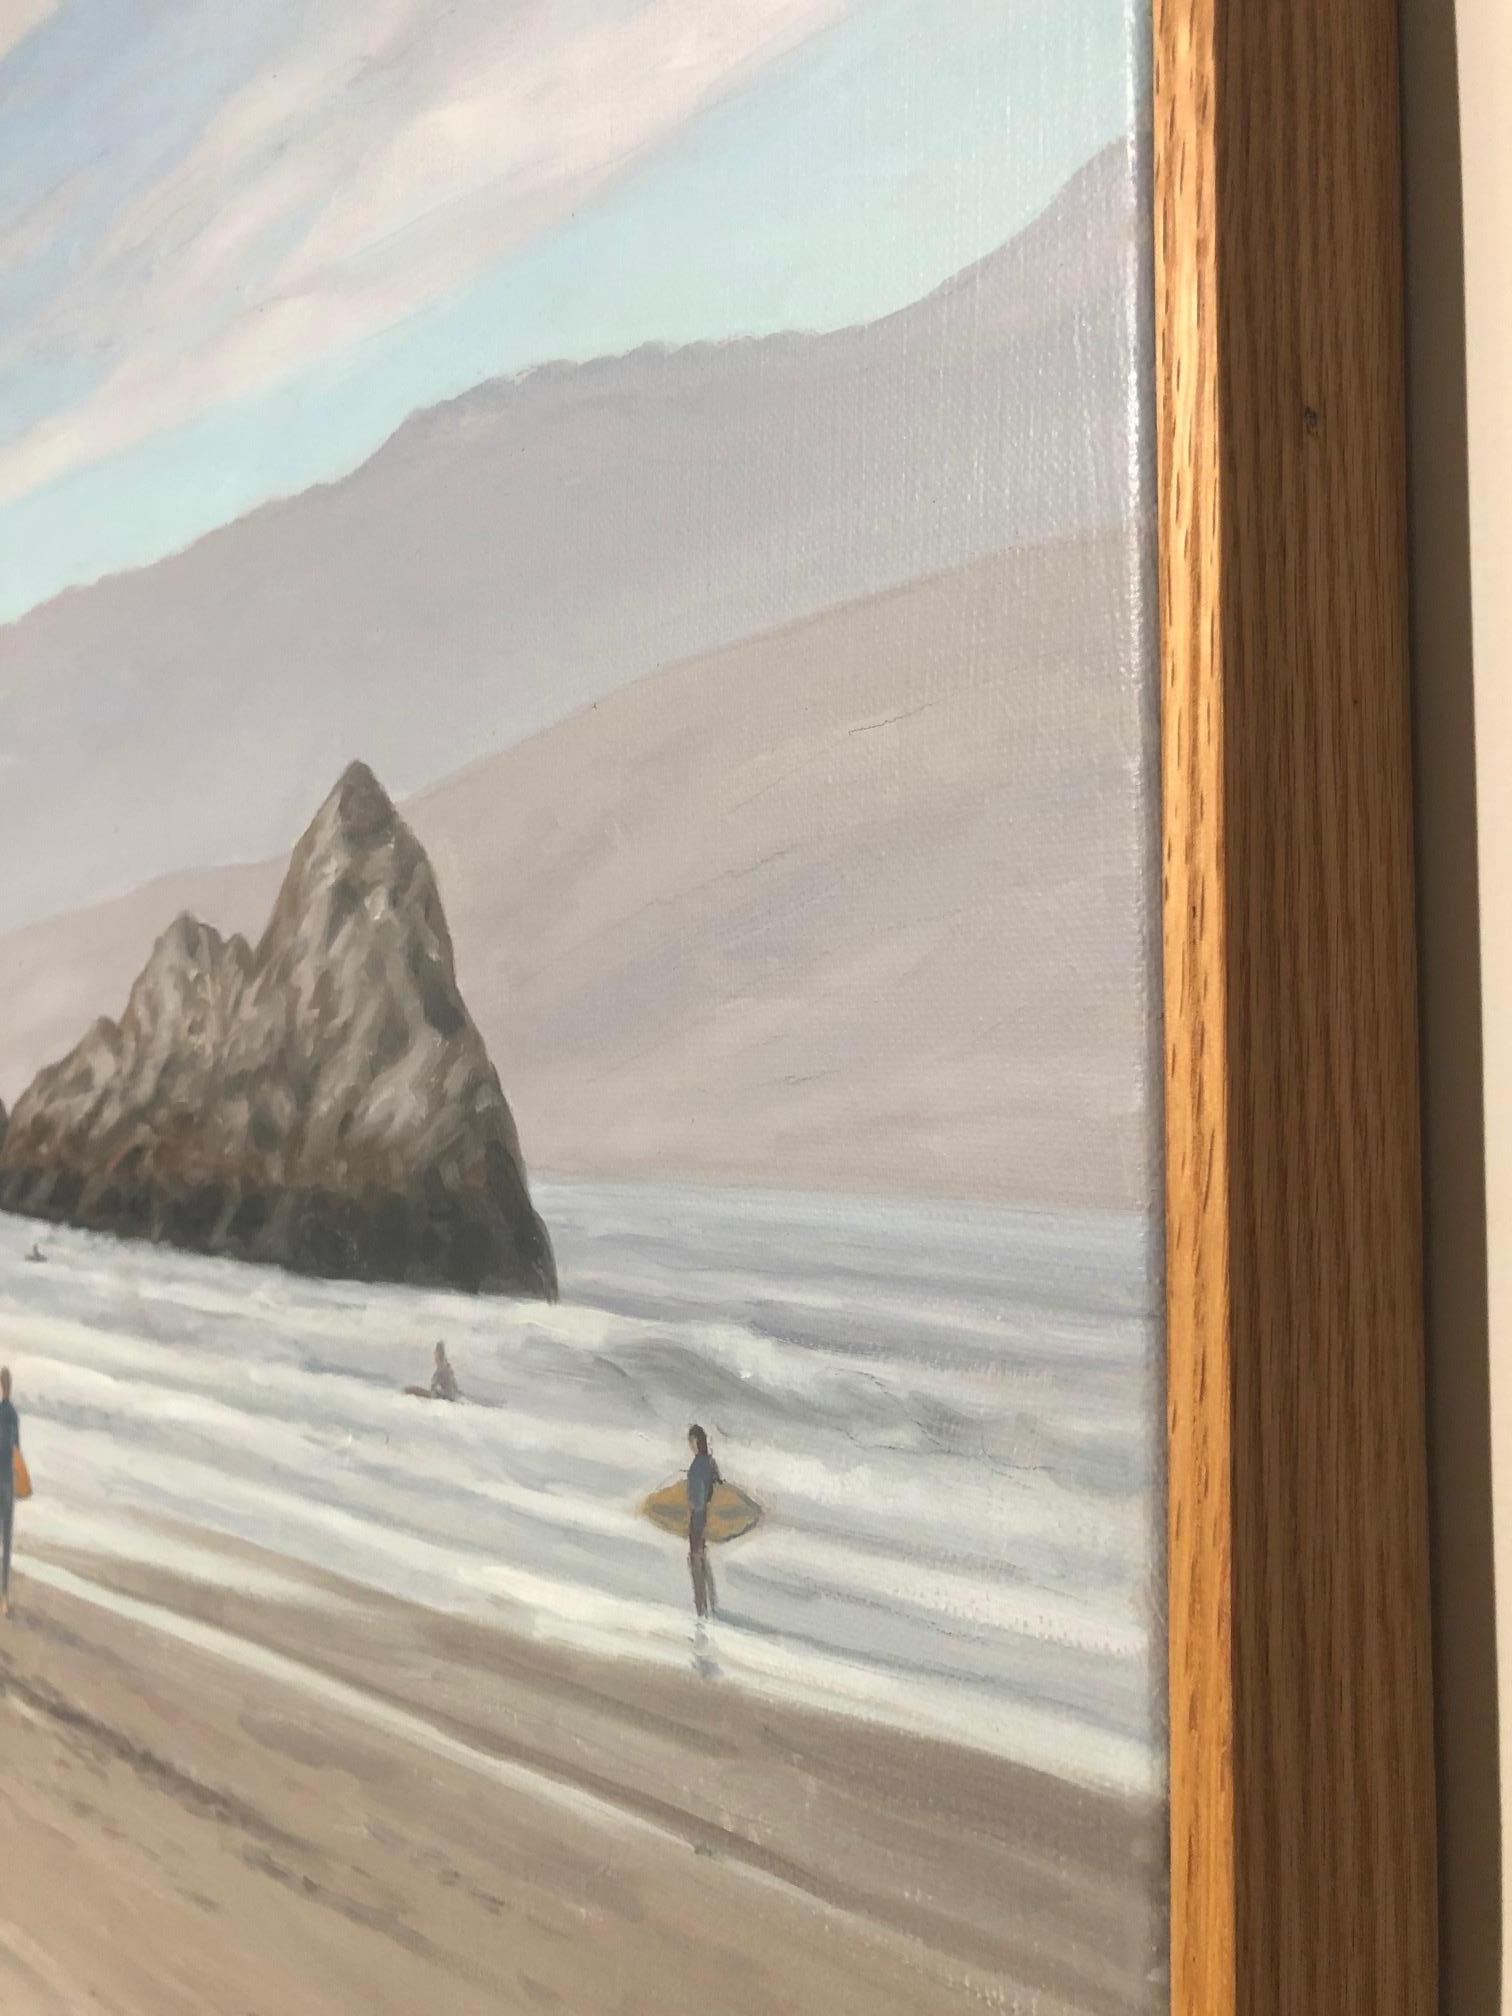 Magnifique scène de plage mettant en scène des surfeurs sur la plage Ocean Beach en Californie, y compris les célèbres Seal Rocks, un homme et son chien et d'autres surfeurs s'avançant vers la mer. La scène célèbre la lumière atmosphérique pour